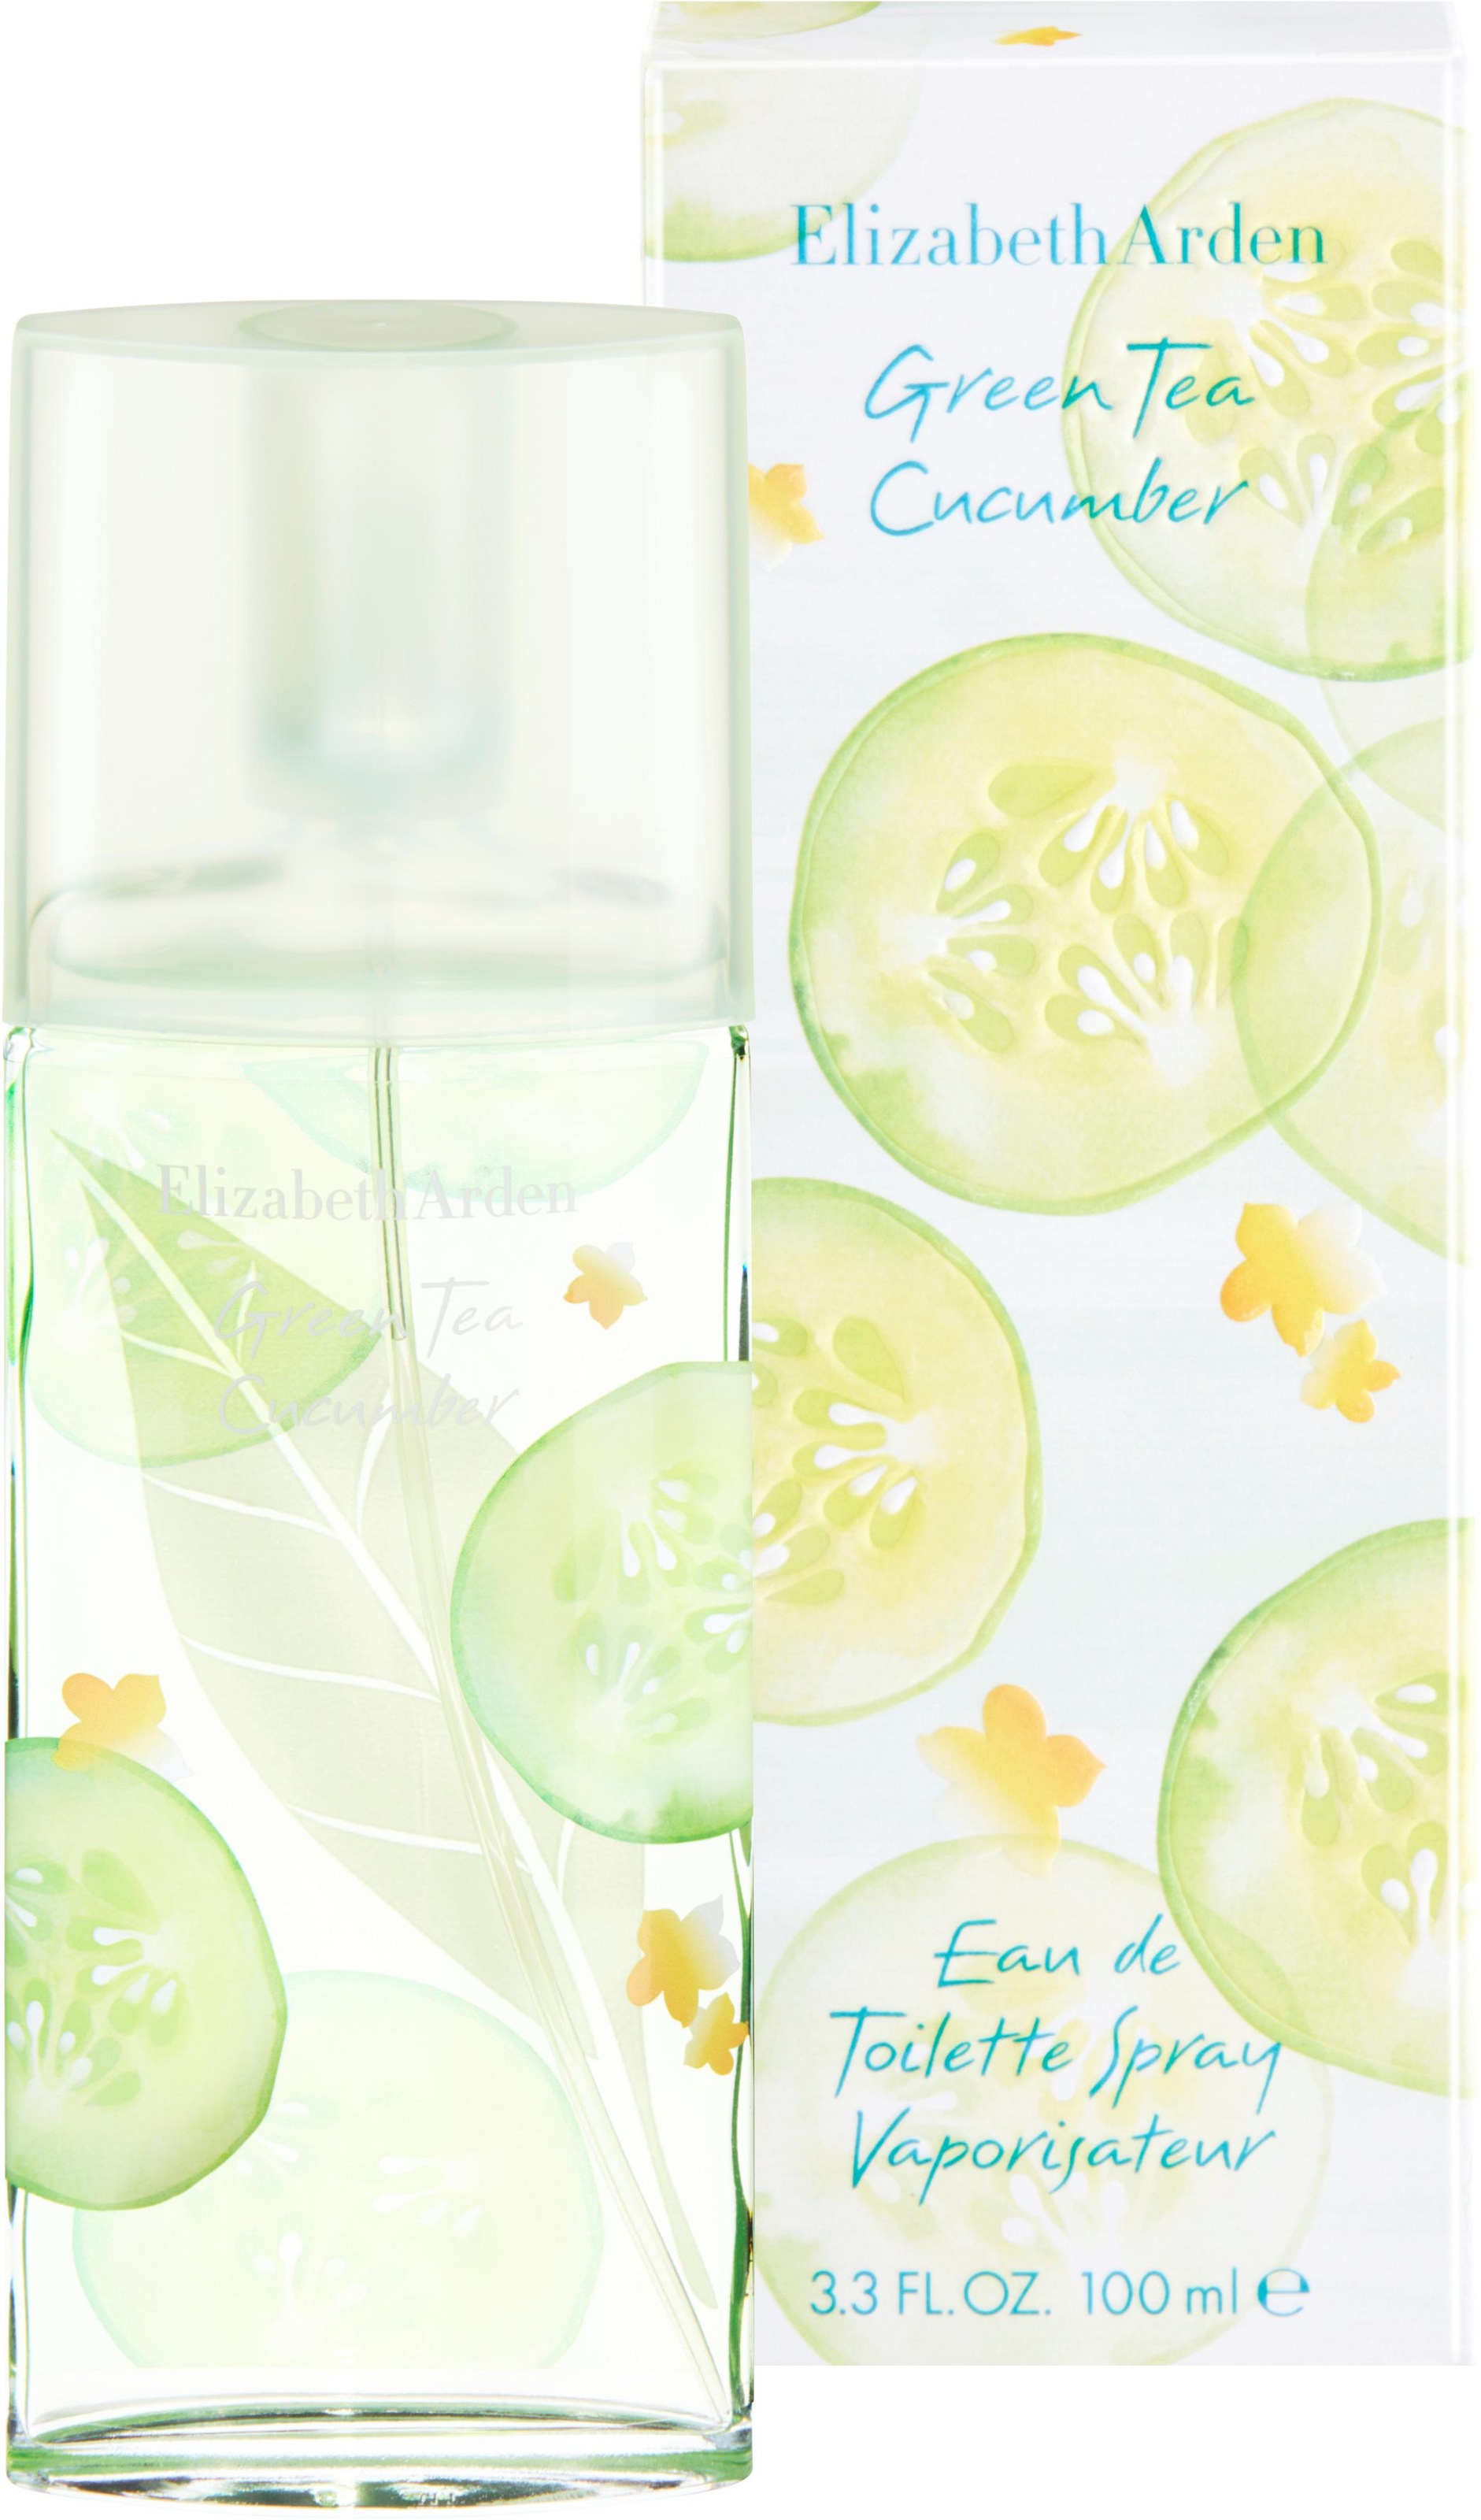 Toilette »Green Arden Cucumber« | online kaufen Elizabeth QUELLE. de Tea de Eau